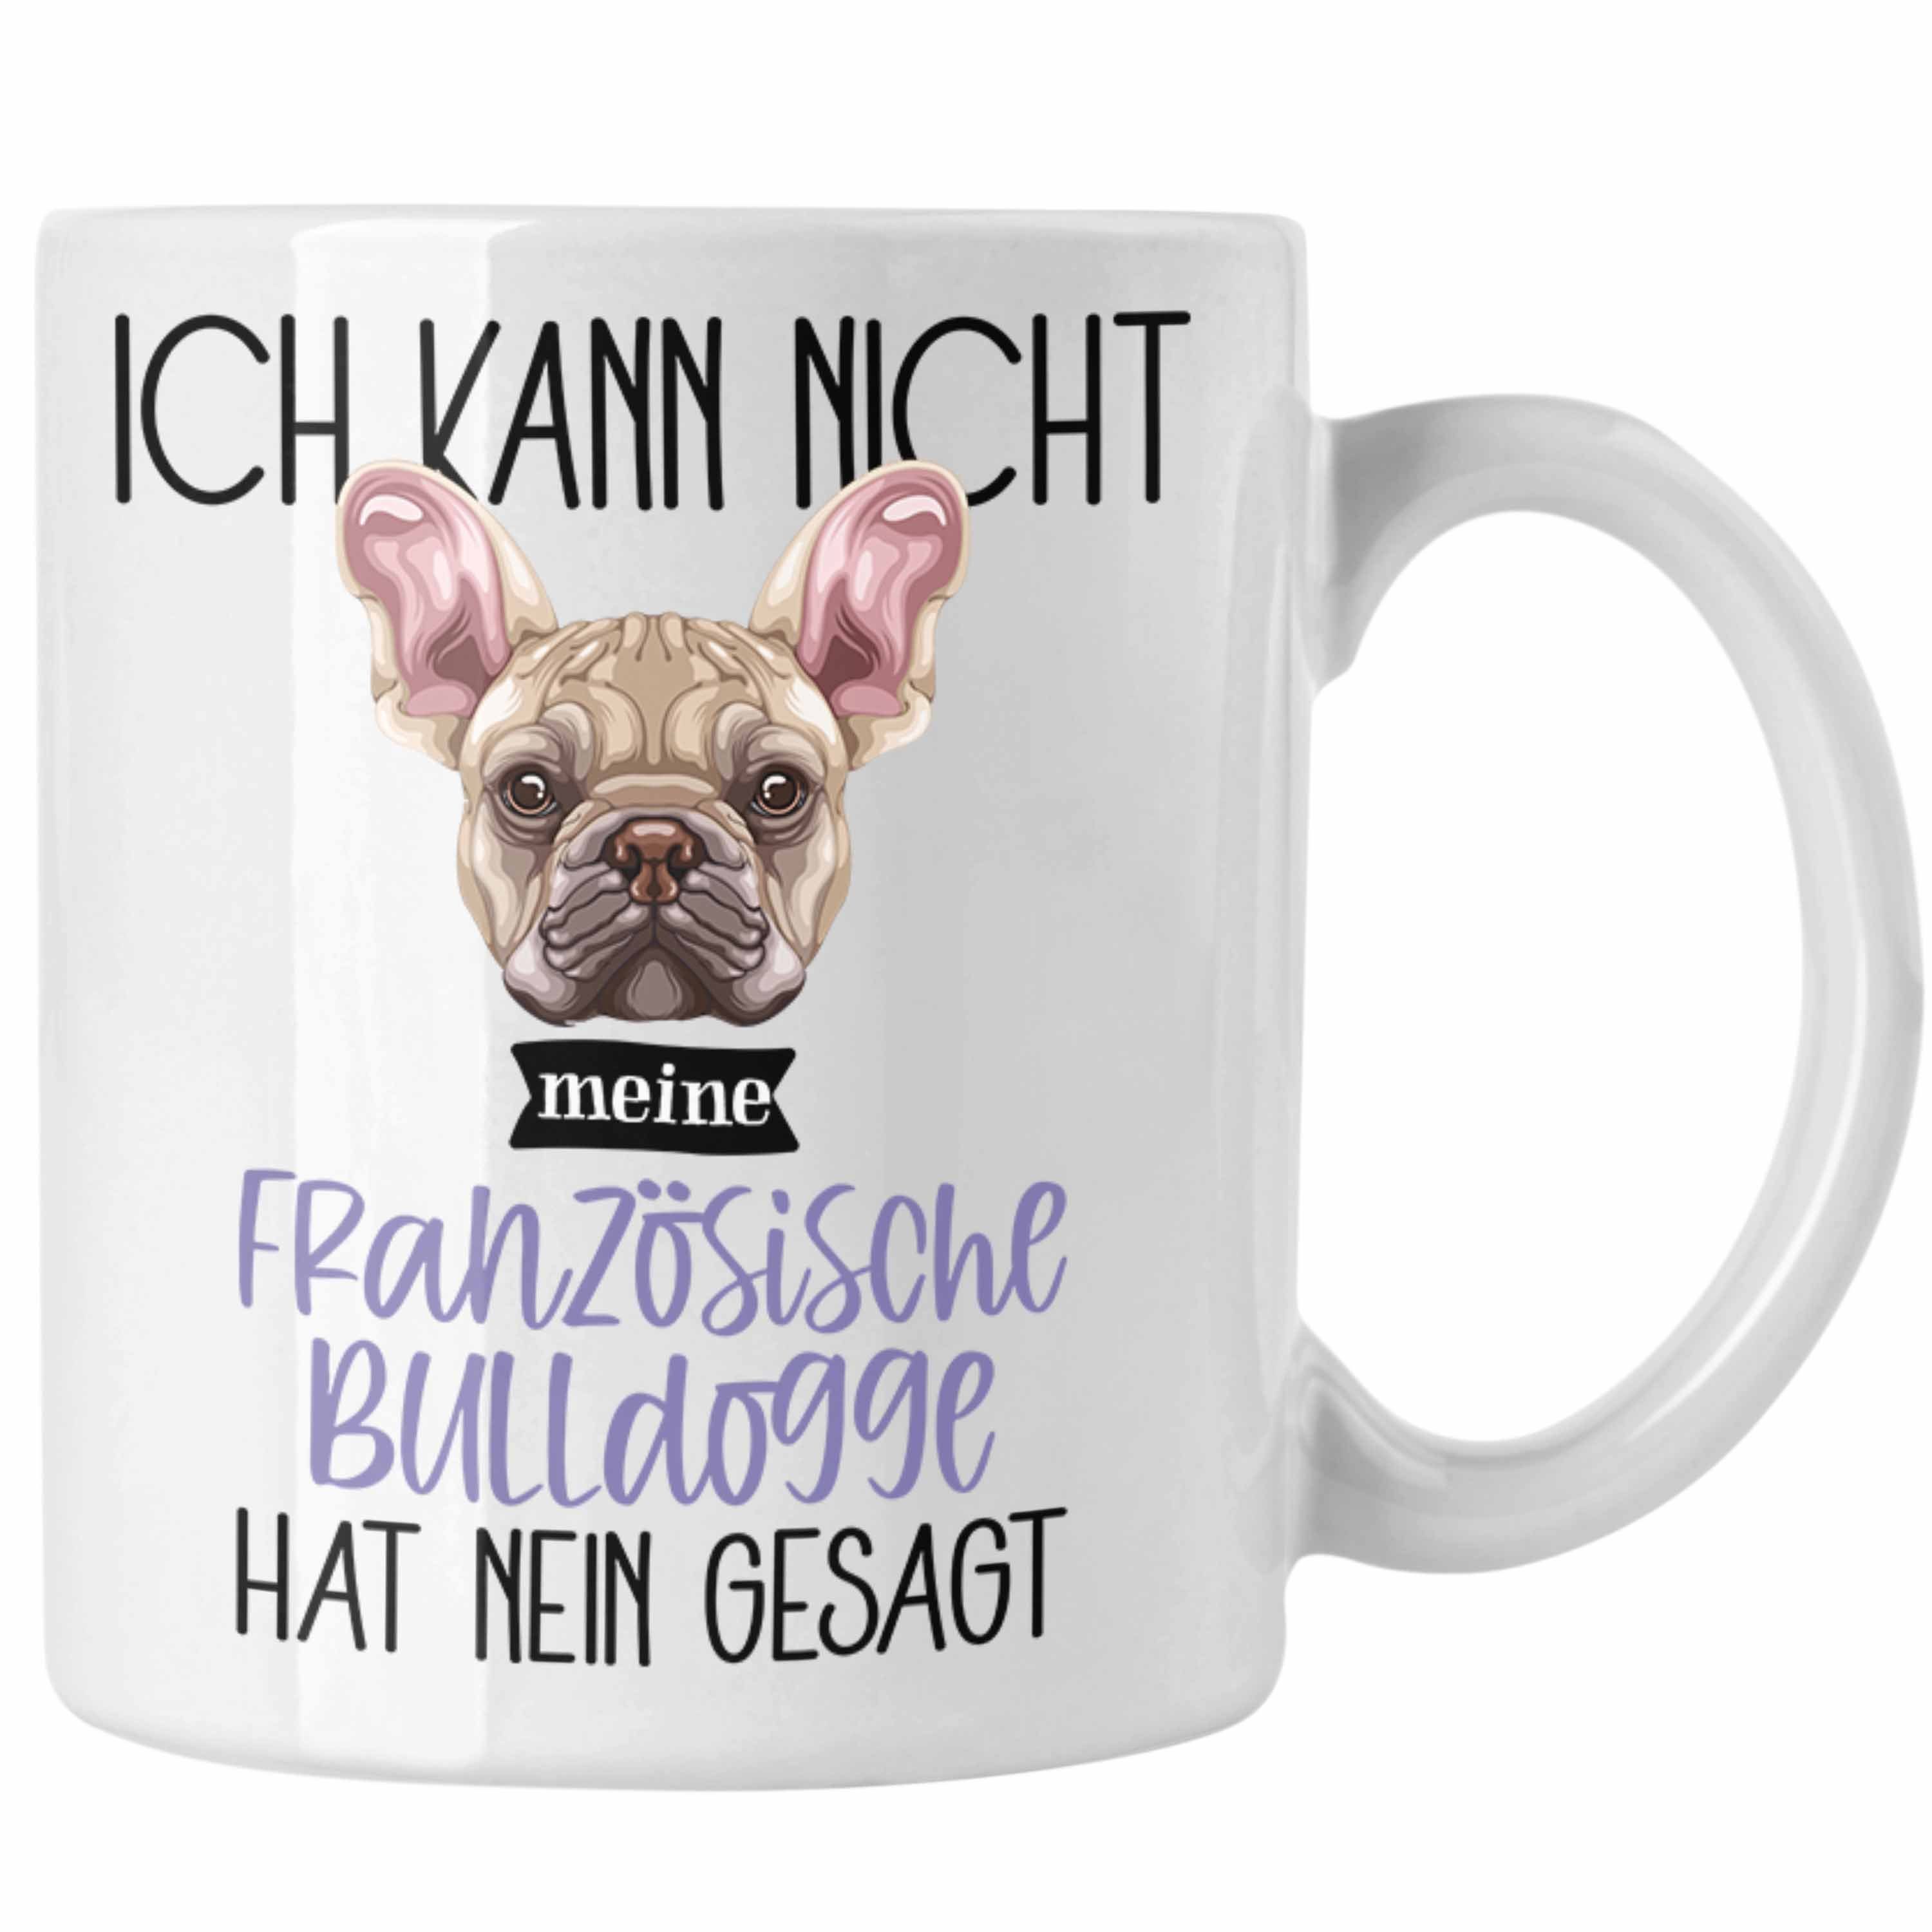 Trendation Tasse Französische Bulldogge Besitzer Tasse Geschenk Lustiger Spruch Geschen Weiss